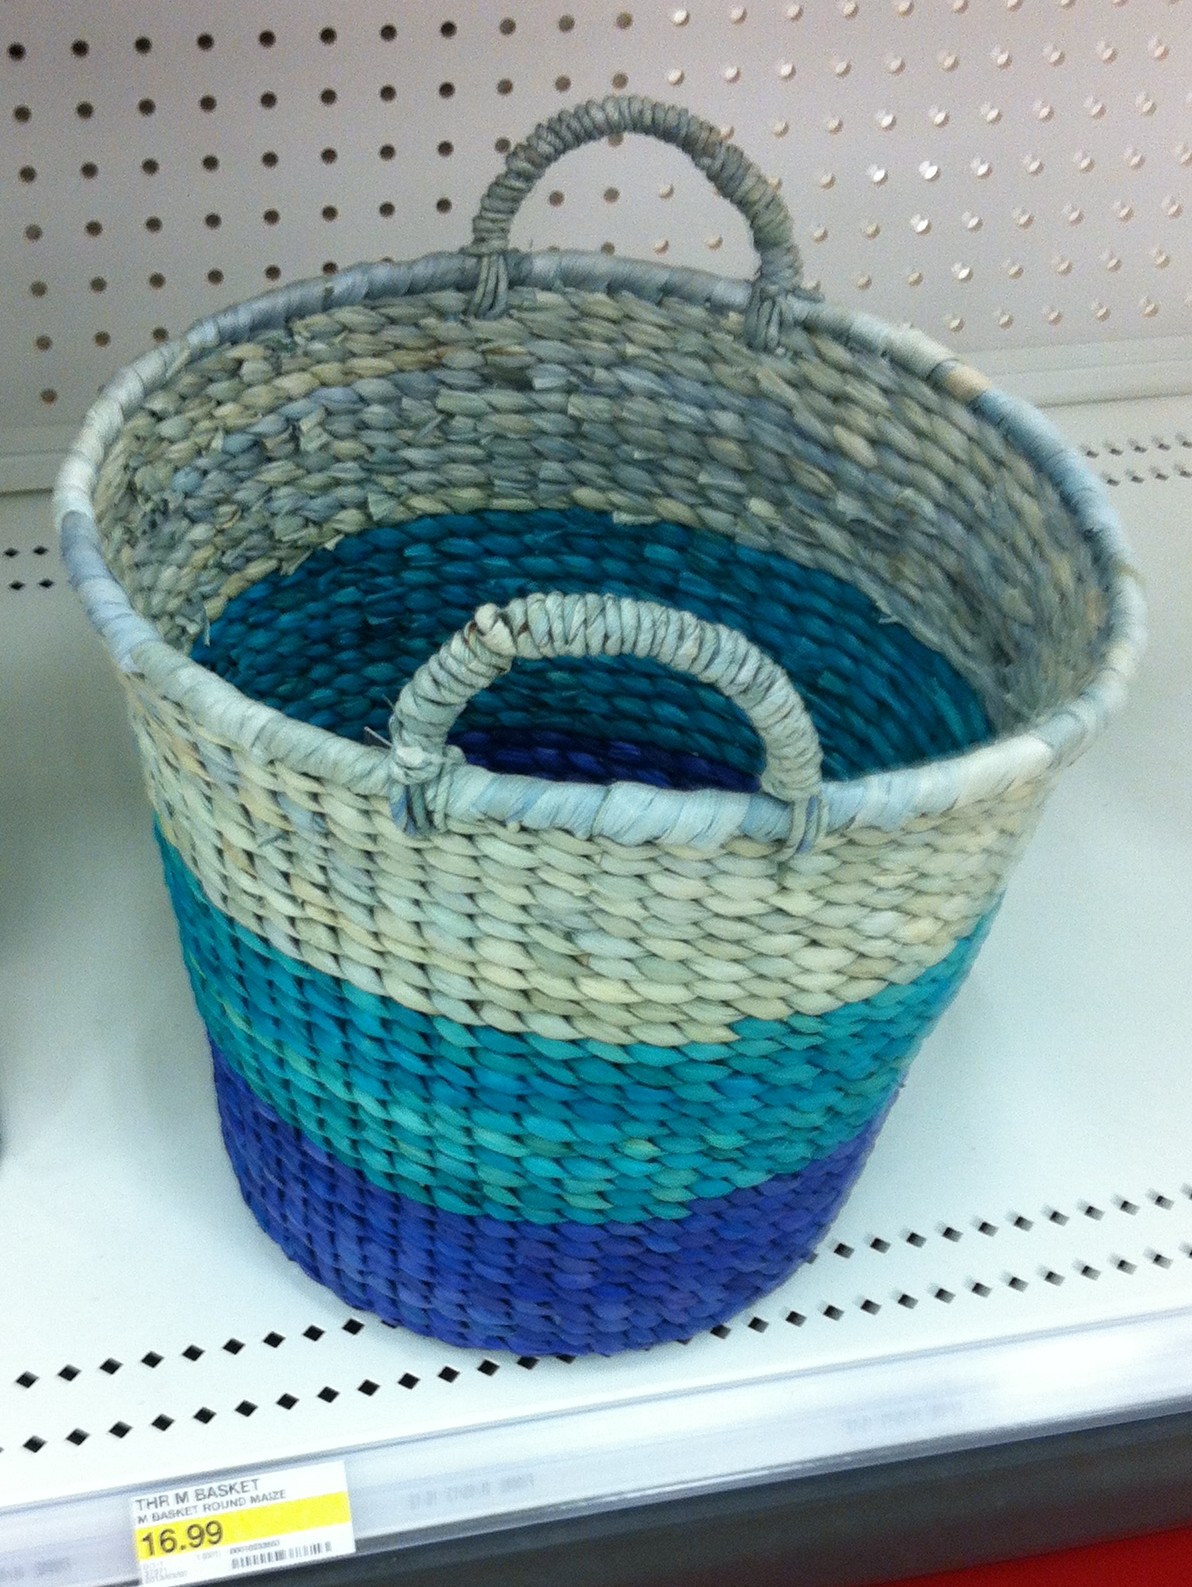 A blue ombre basket.